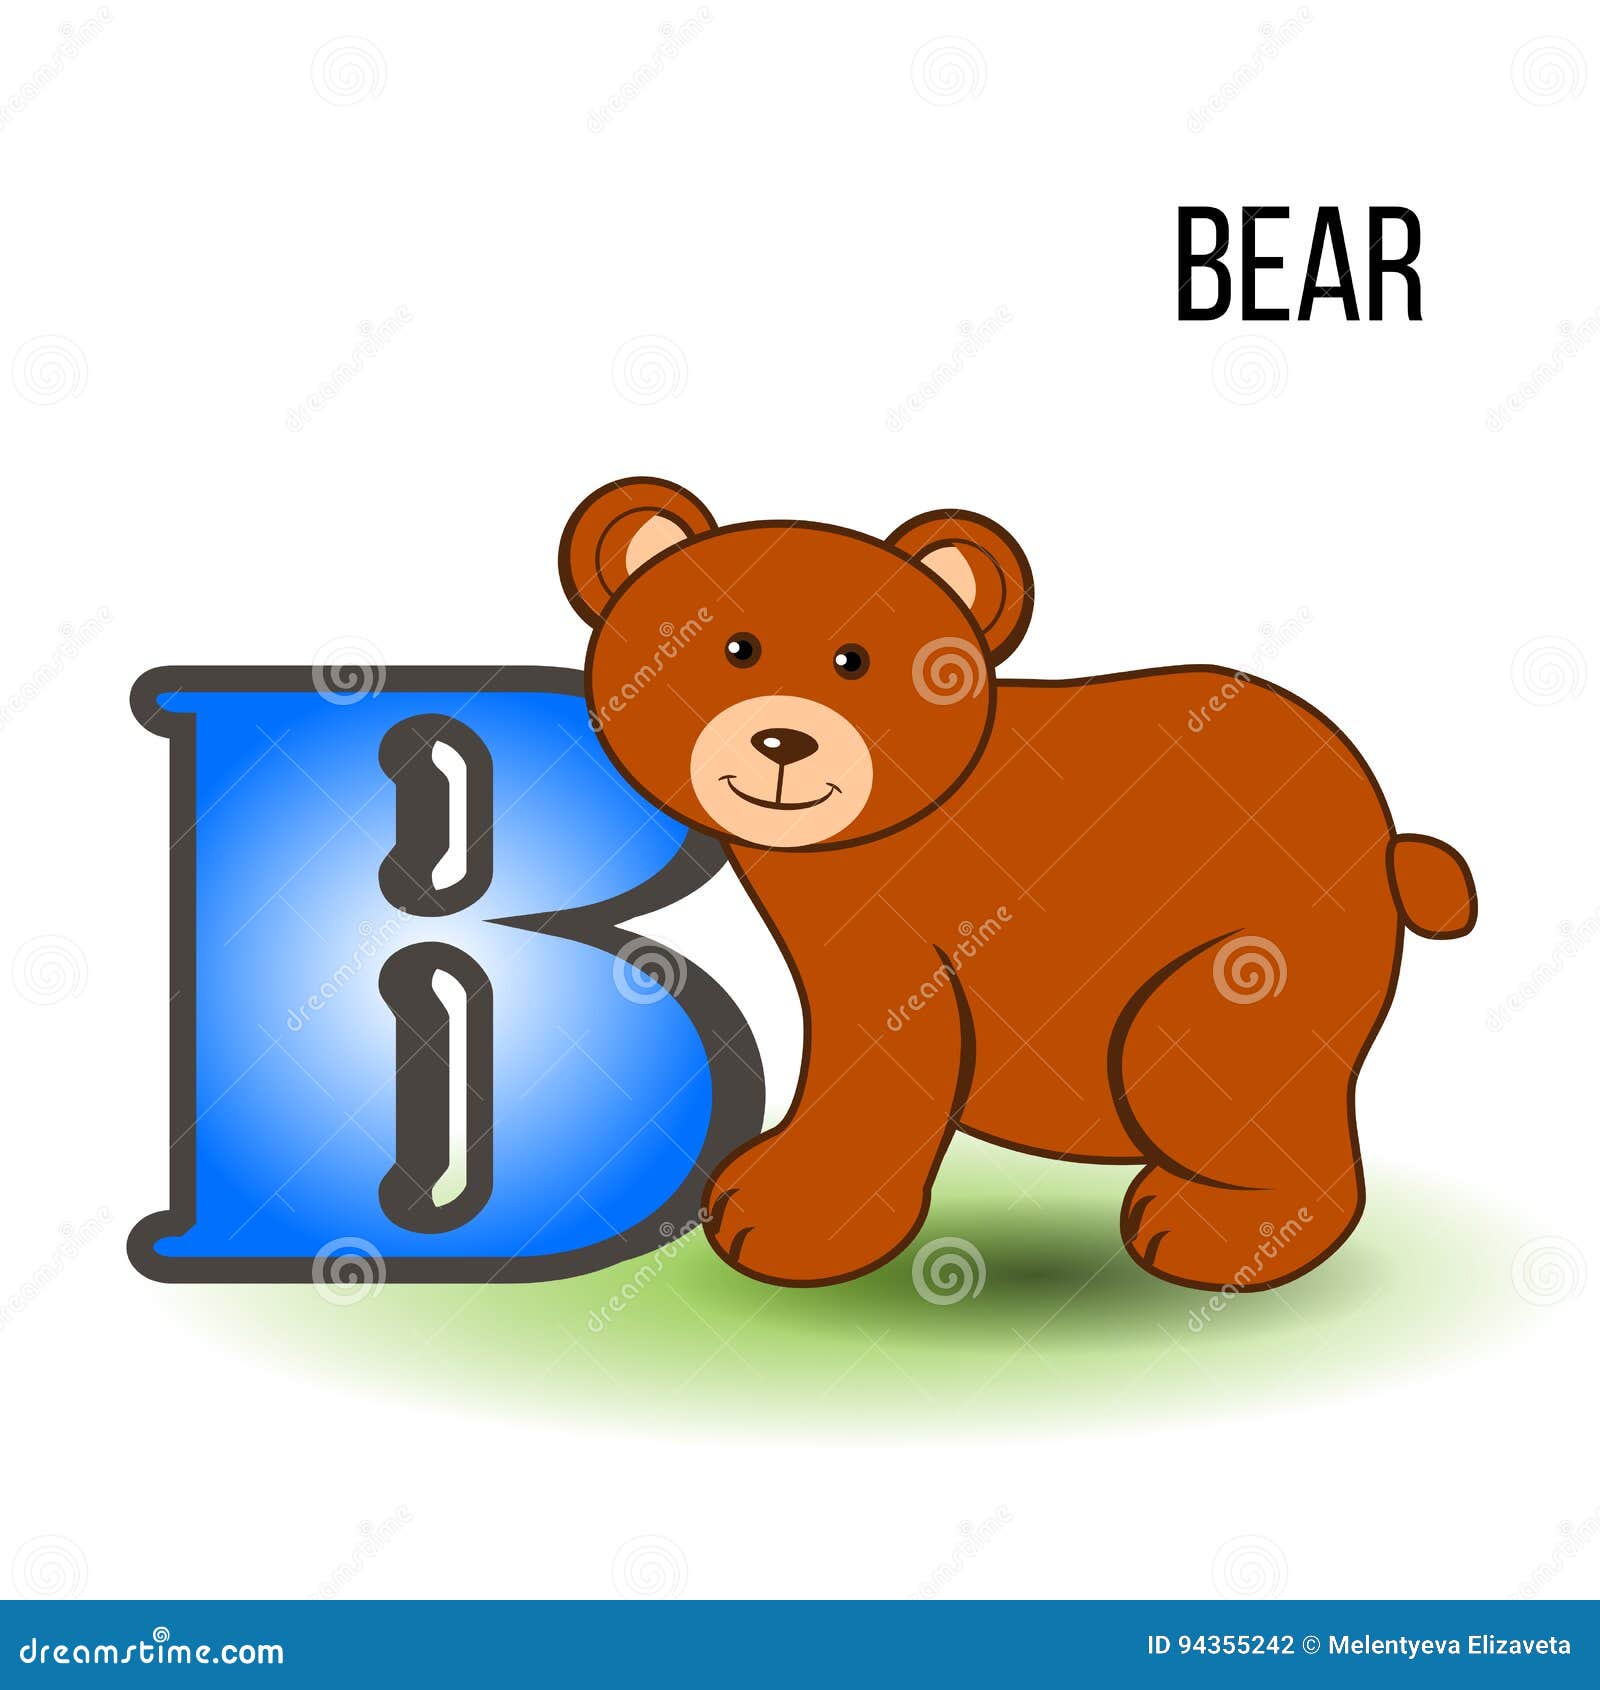 Как на английском будет медведь. Медведь по английскому. Bear на английском. Карточки на букву английскую медведь. Медвежонок на английском.